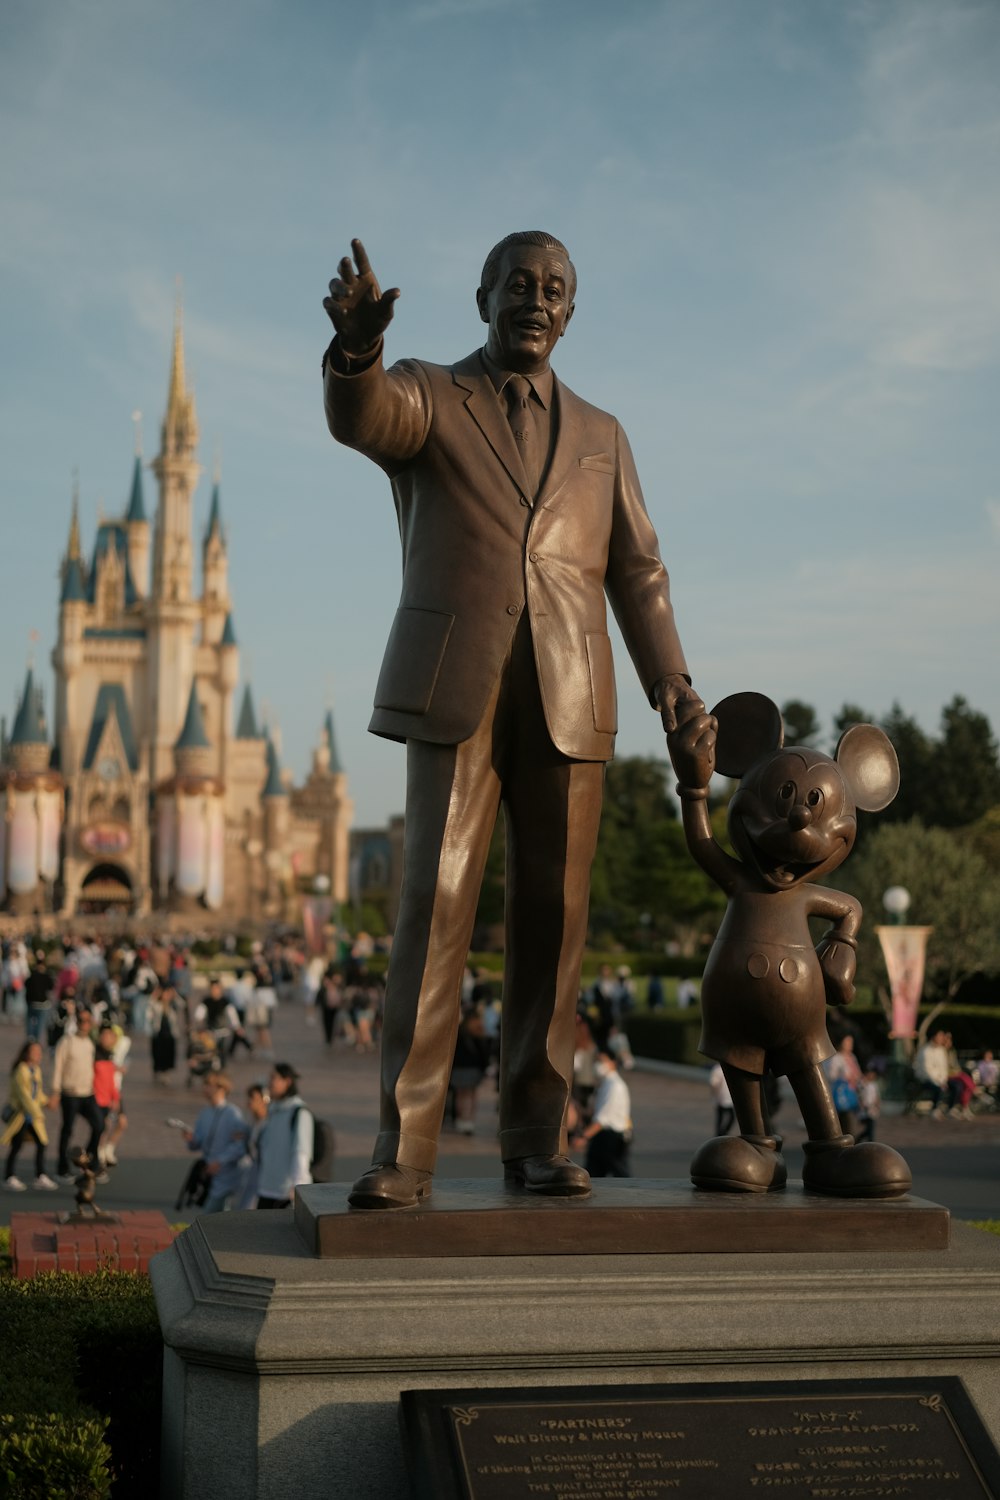 Una estatua de Walt y Mickey Mouse frente a un castillo